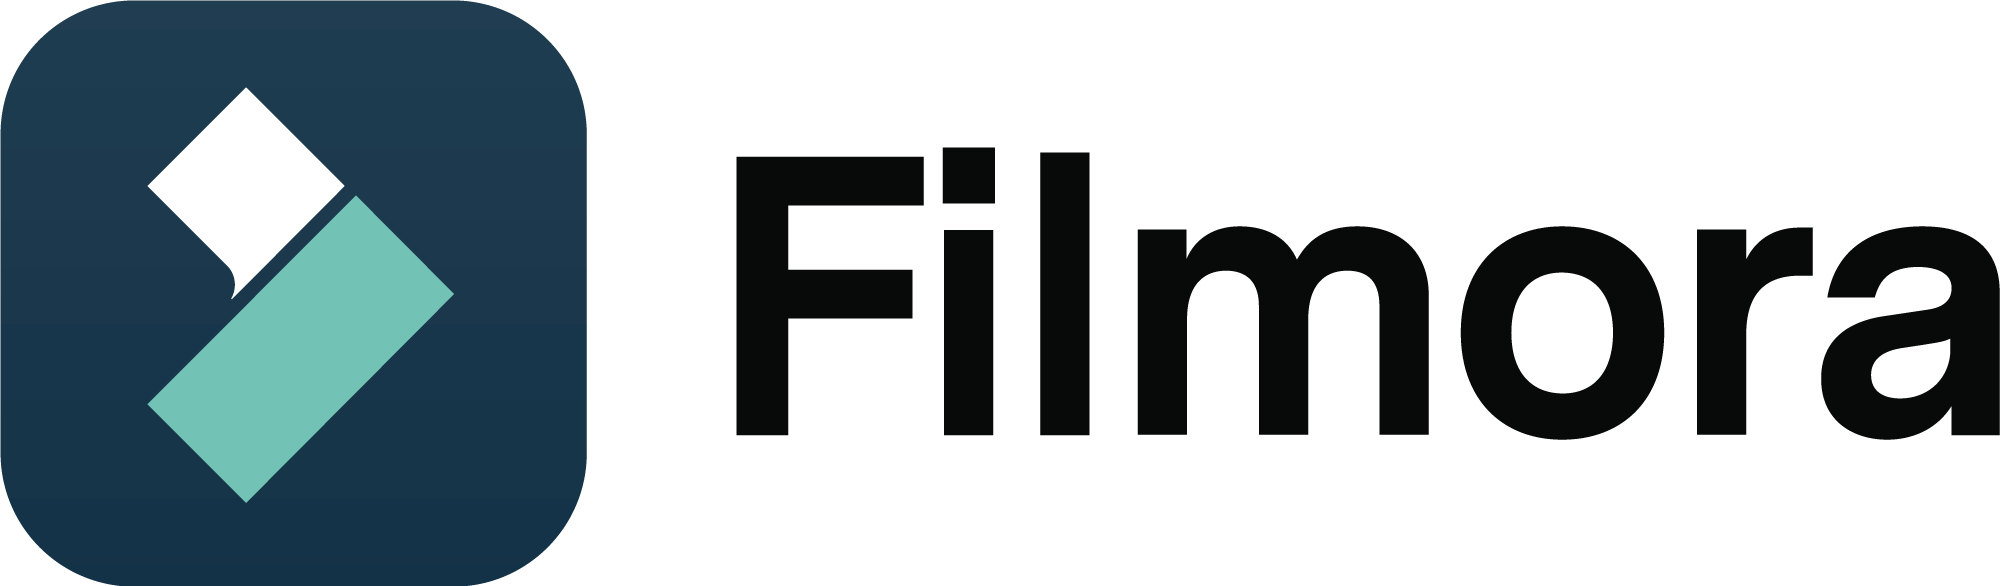 Filmora Logo PNG